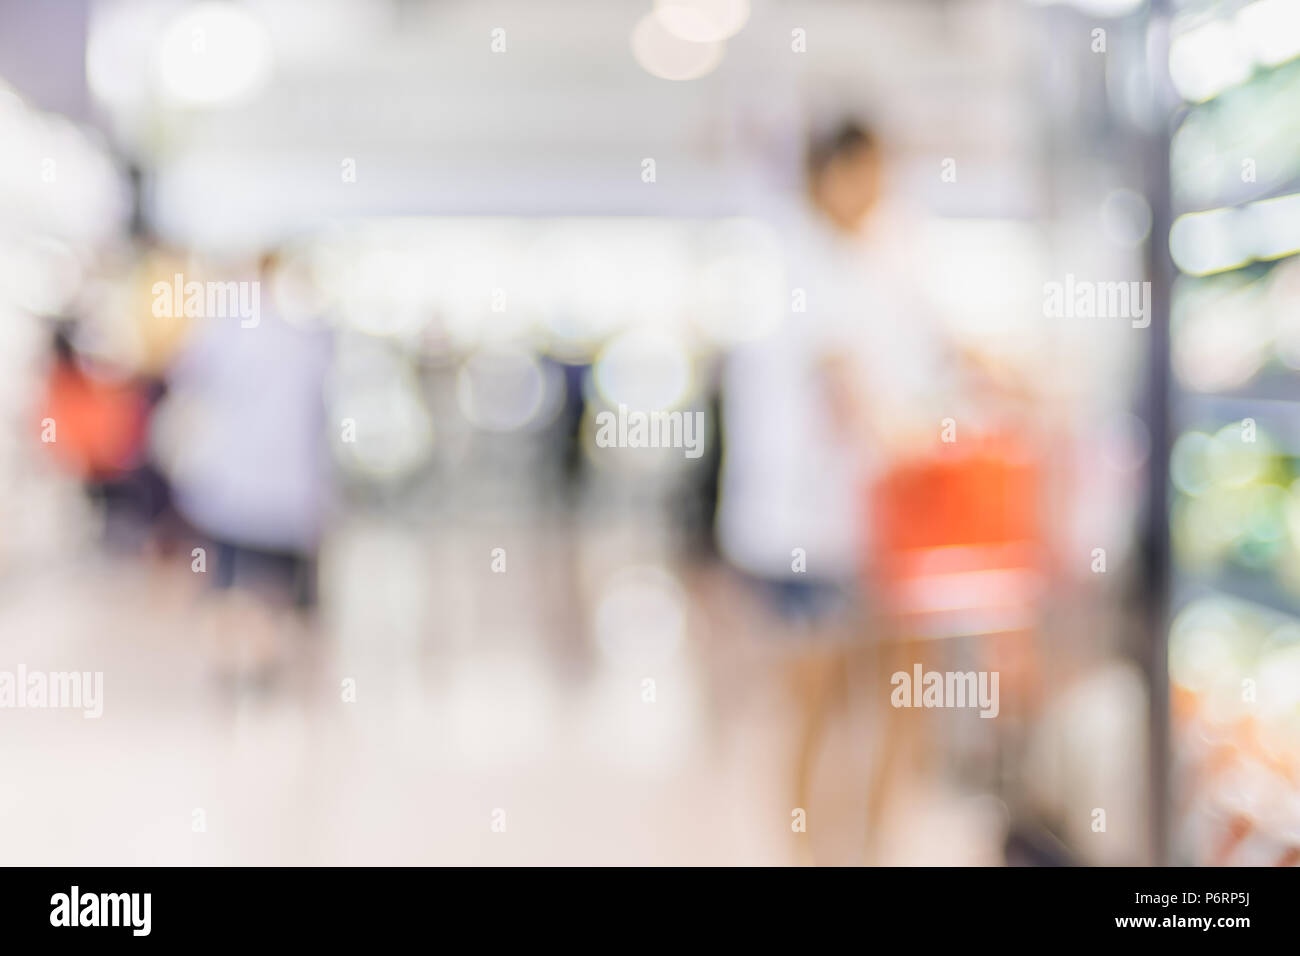 Blur Hintergrund der Kunde einkaufen mit Warenkorb im Supermarkt store Produkt Regal mit bokeh Licht Stockfoto